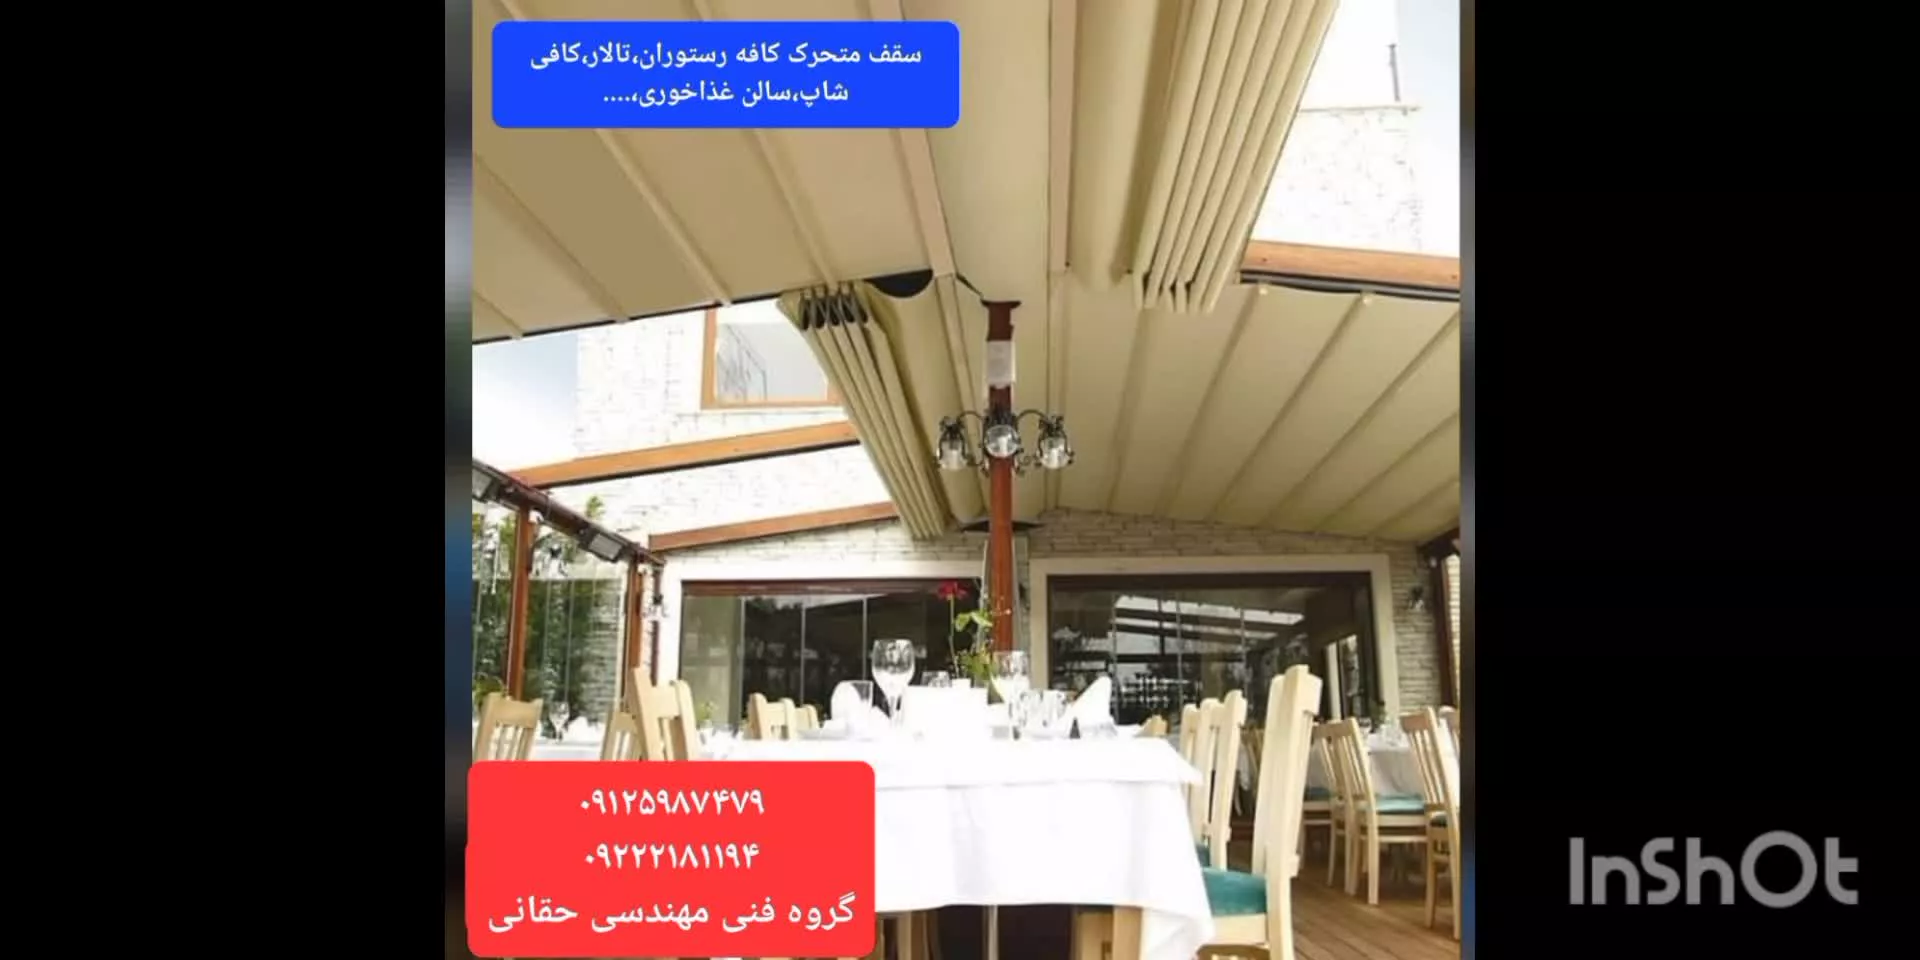 سقف اتوماتیک فست فود مجتمع پذیرایی،سقف برقی تراس کافه رستوران عربی